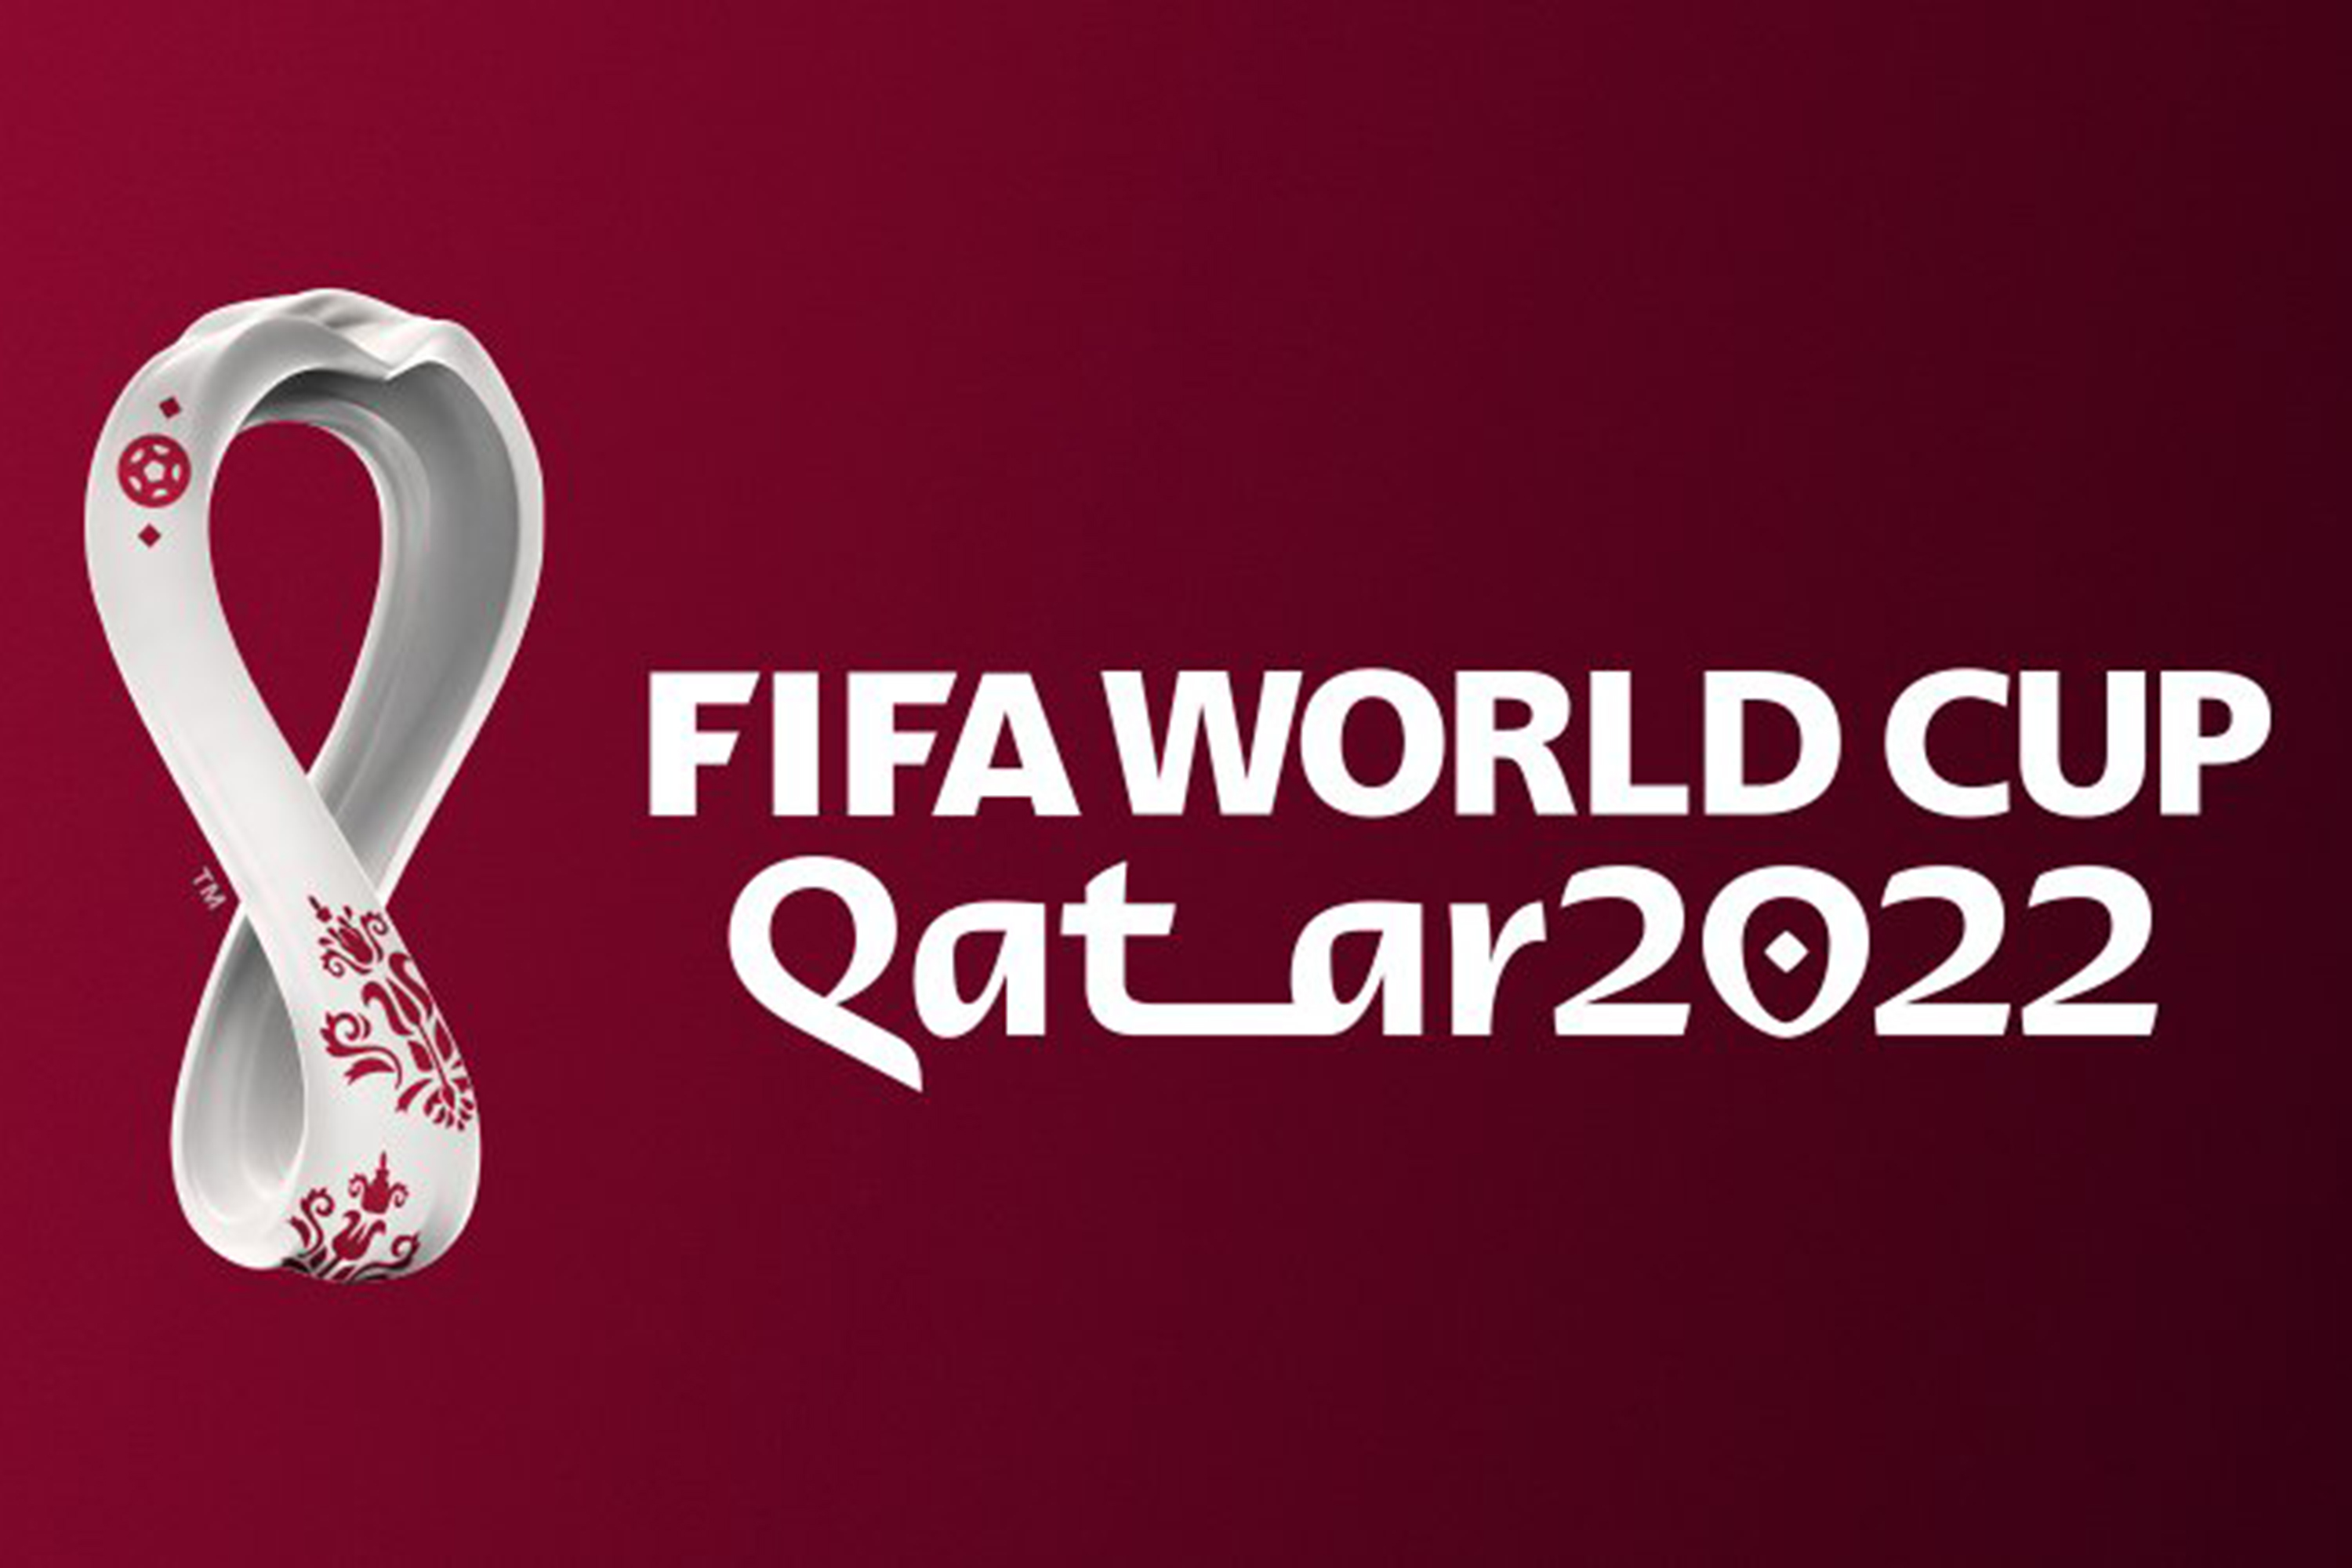 Fifa revela logo da Copa do Mundo de 2022 no Catar